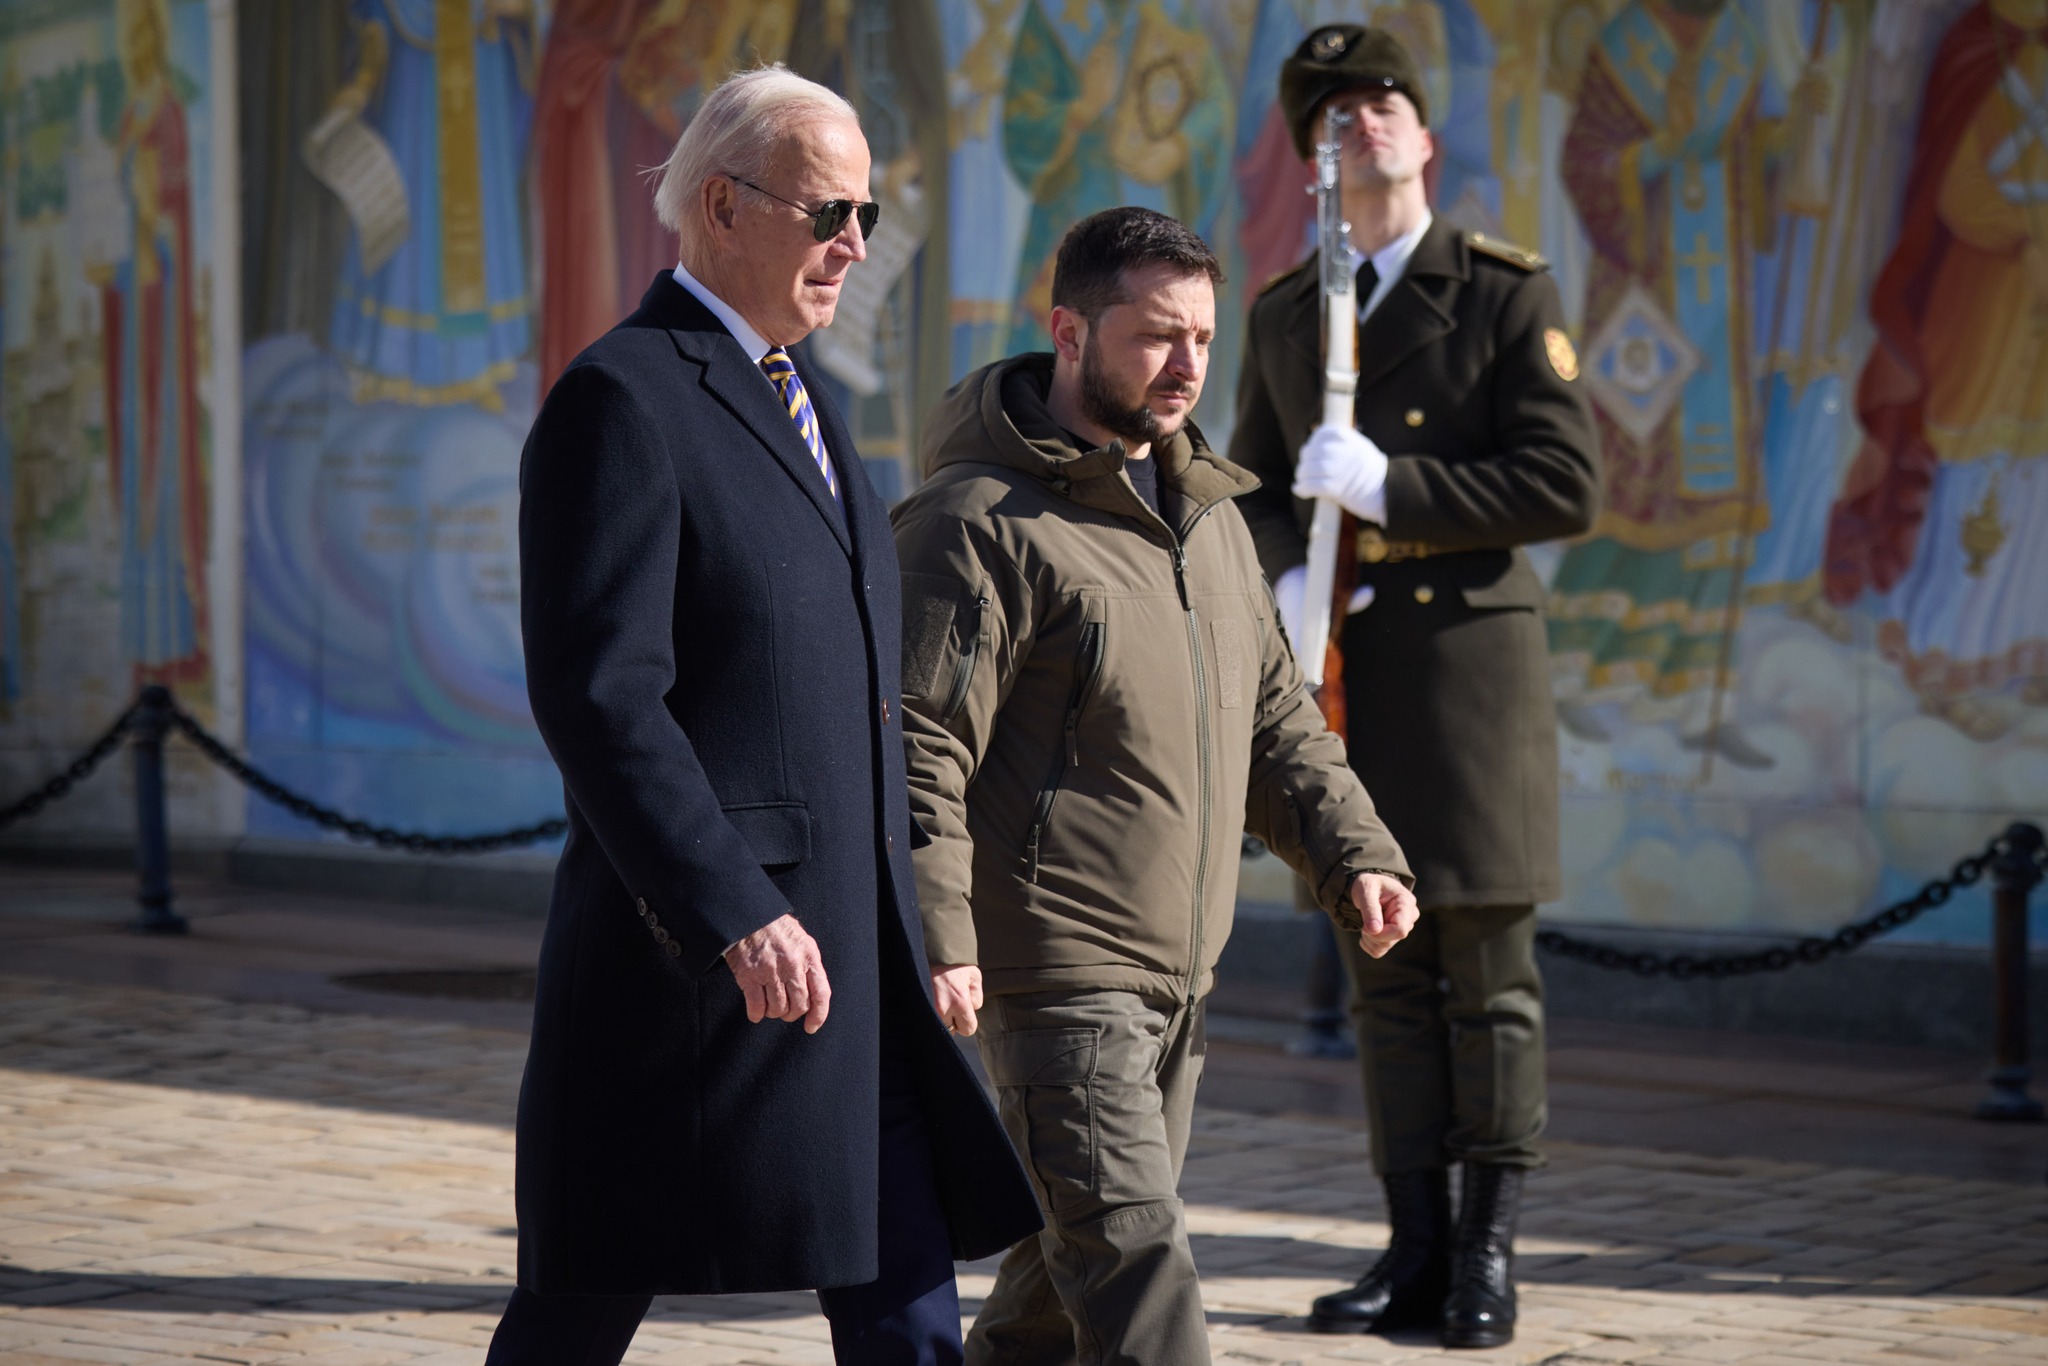 Biden meets Zelensky in Kyiv during surprise visit to Ukraine